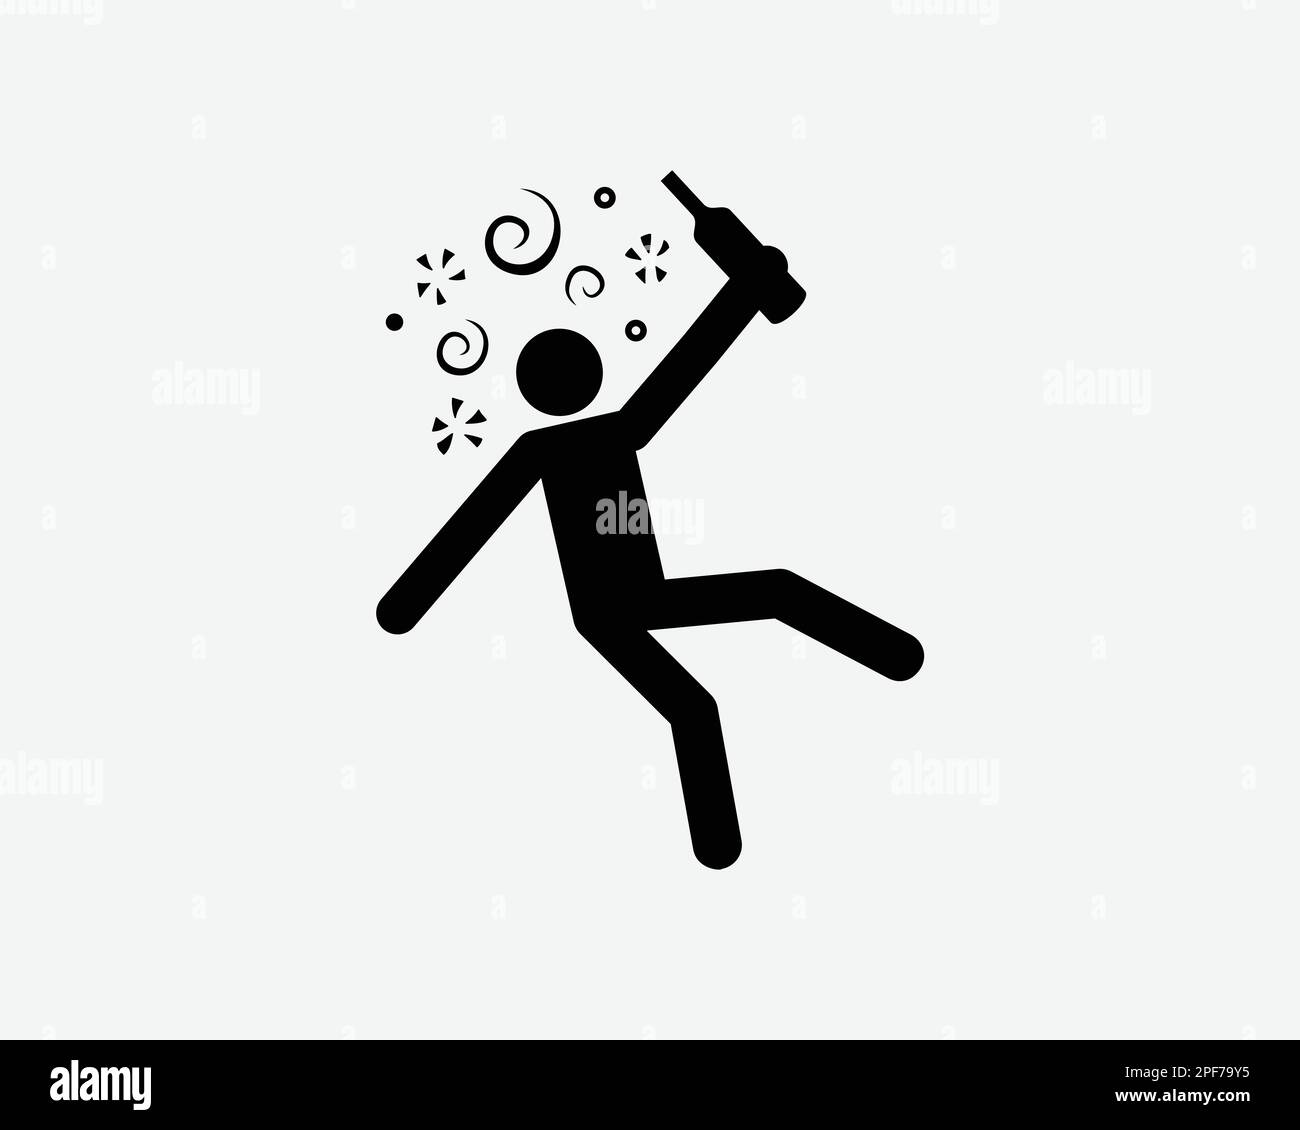 Persona ubriaco icona alcool ubriaco bere Dizzy Vector nero bianco Silhouette simbolo segno grafico clipart illustrazione pittogramma Illustrazione Vettoriale